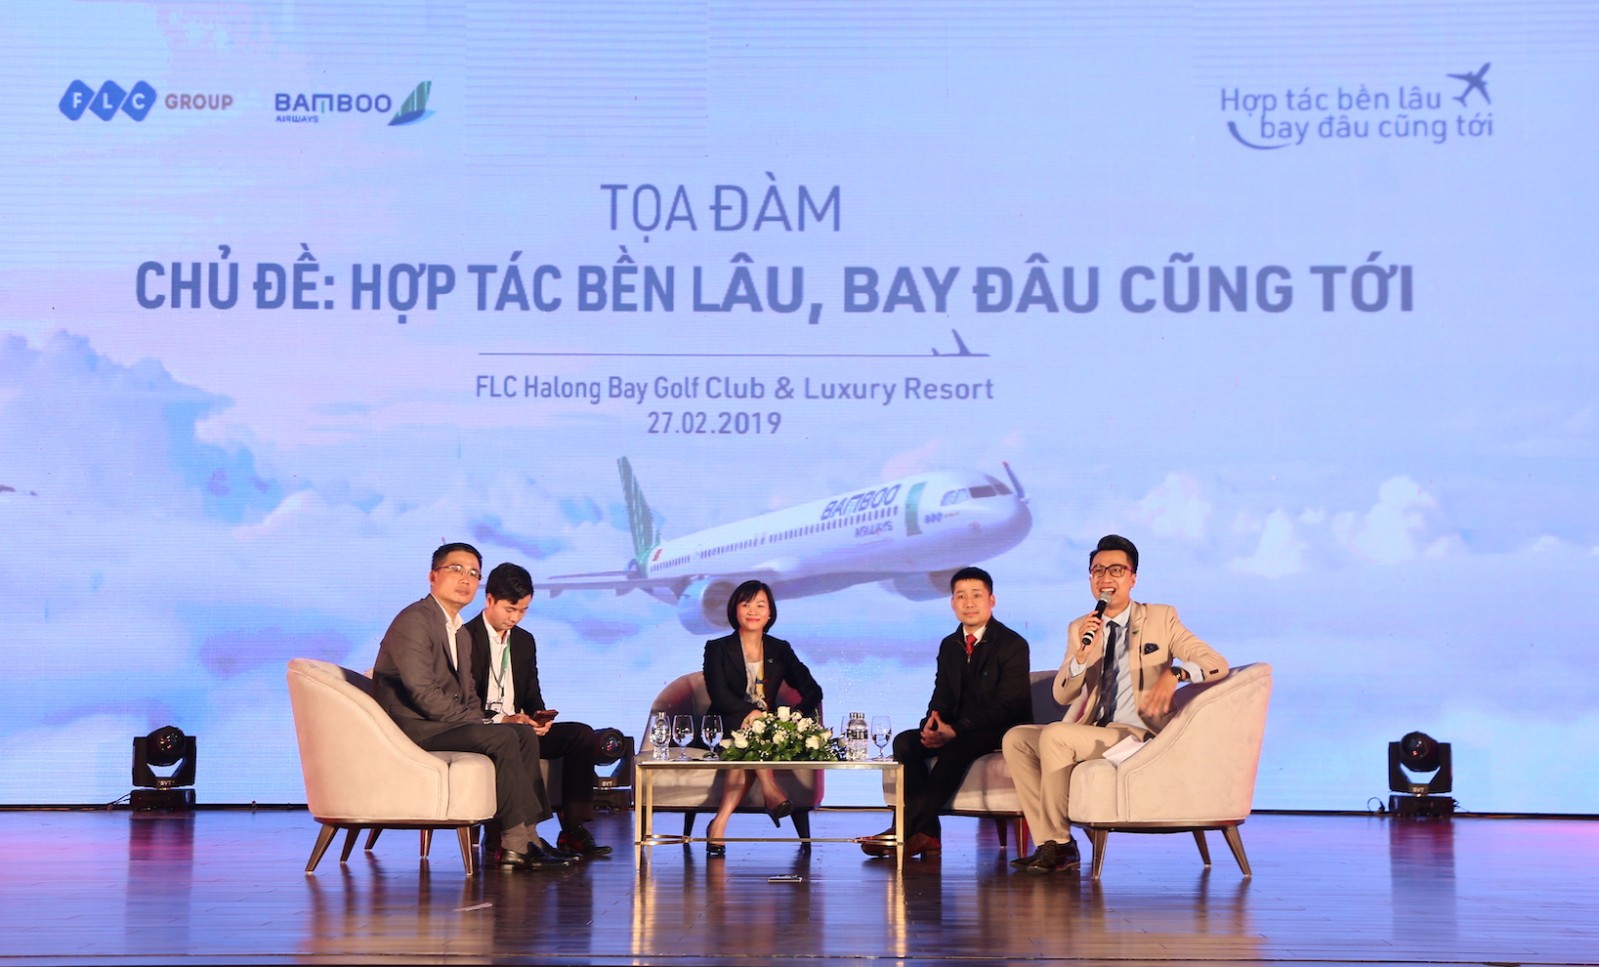 Lãnh đạo các đại lý đóng góp ý kiến với mong muốn được thấy Bamboo Airways hoàn hảo hơn